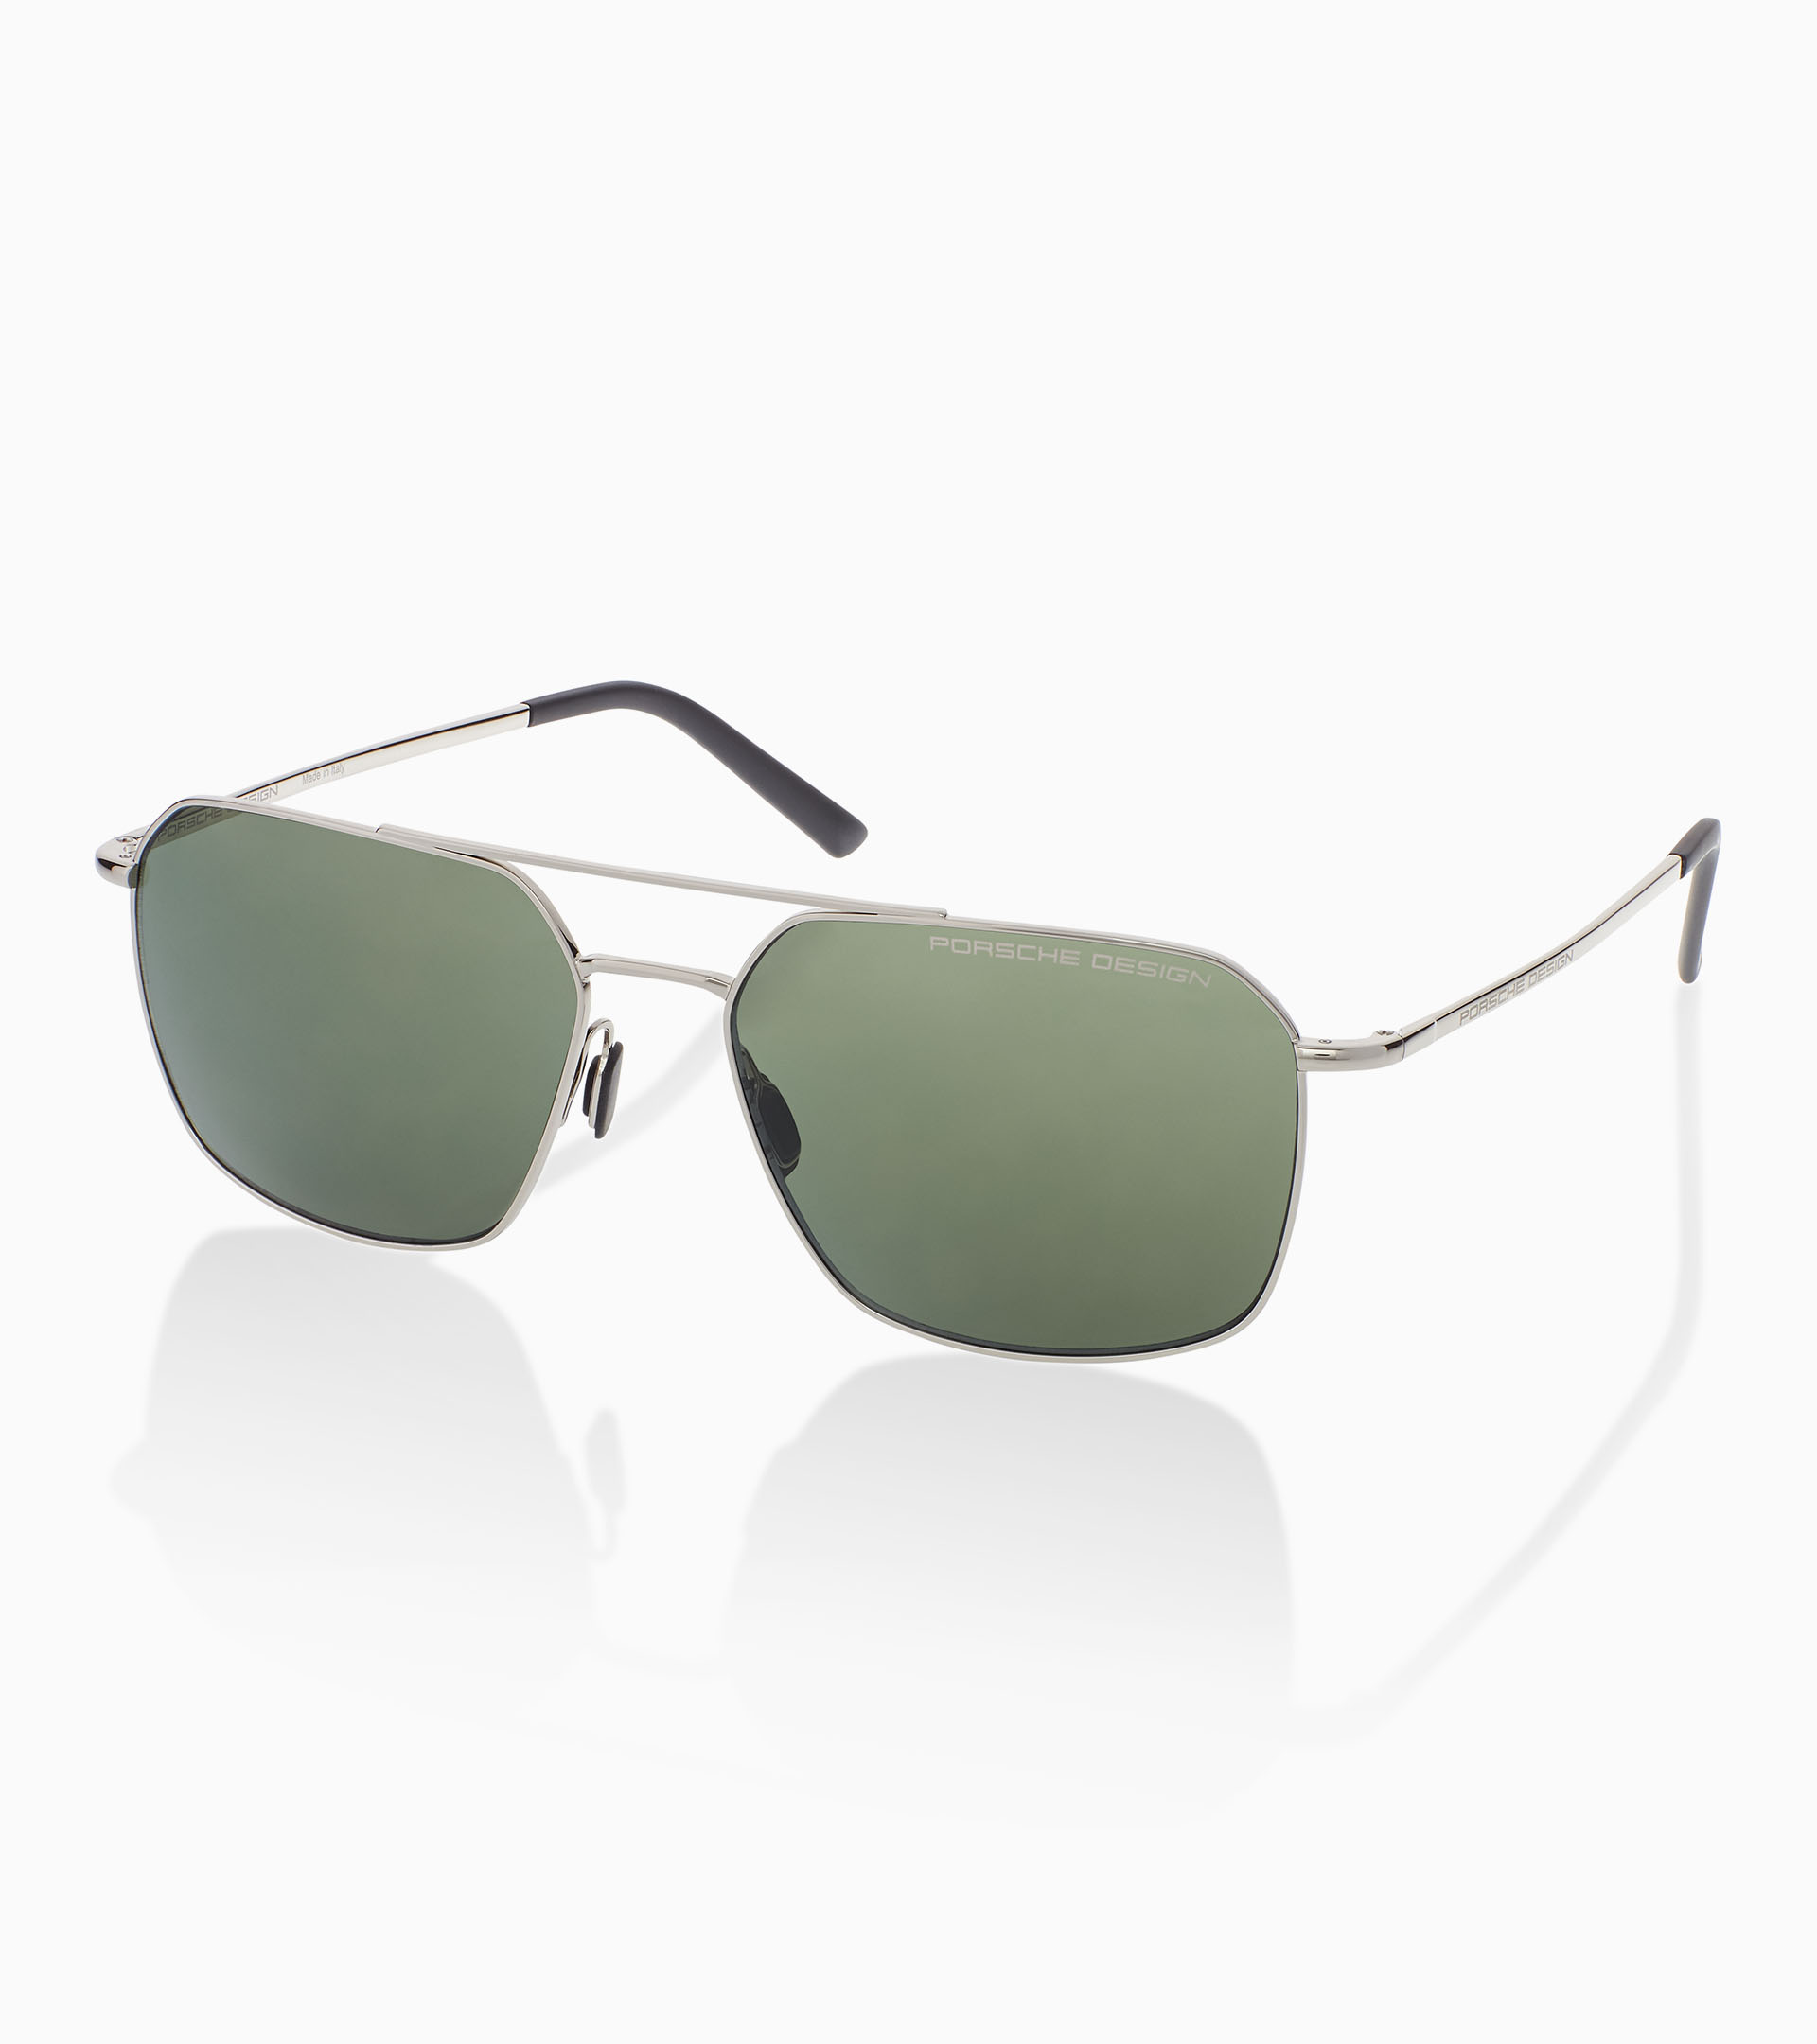 Sunglasses P´8970 - Square Sunglasses for Men | Porsche Design 